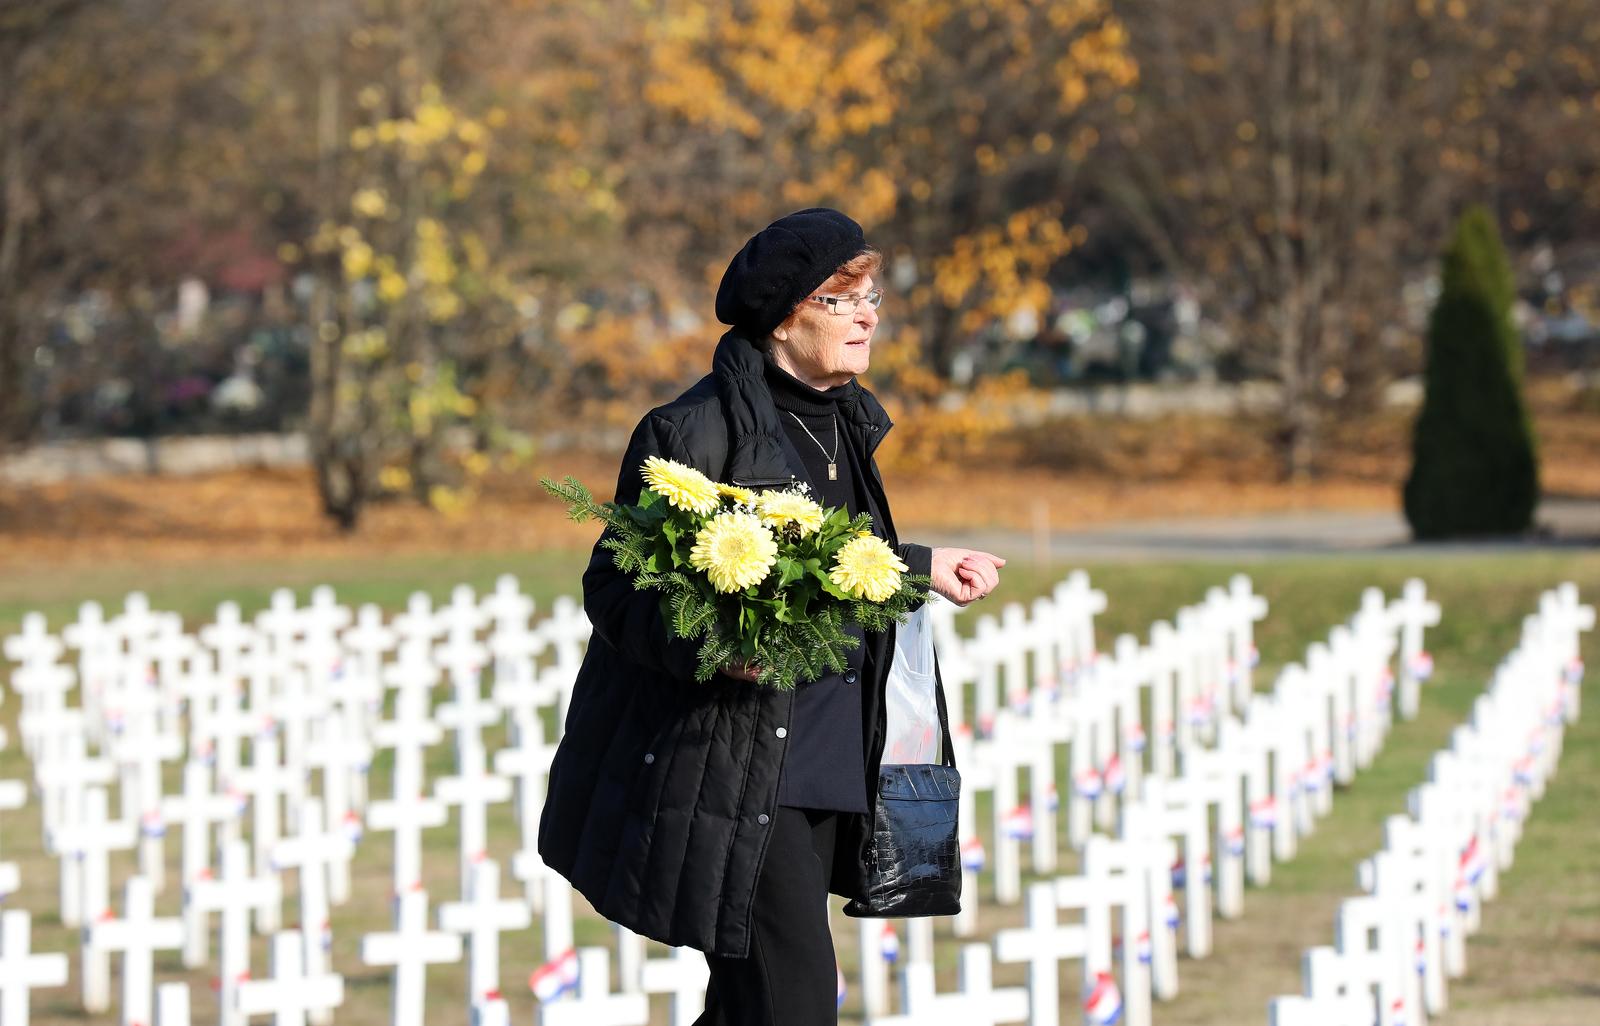 17.11.2021., Vukovar - Brojni gradjani posjecuju Memorijalno groblje u Vukovaru dan prije Kolone sjecanja kako bi izbjegli guzvu i u tisine se pomolili i odali pocast svim zrtvama.